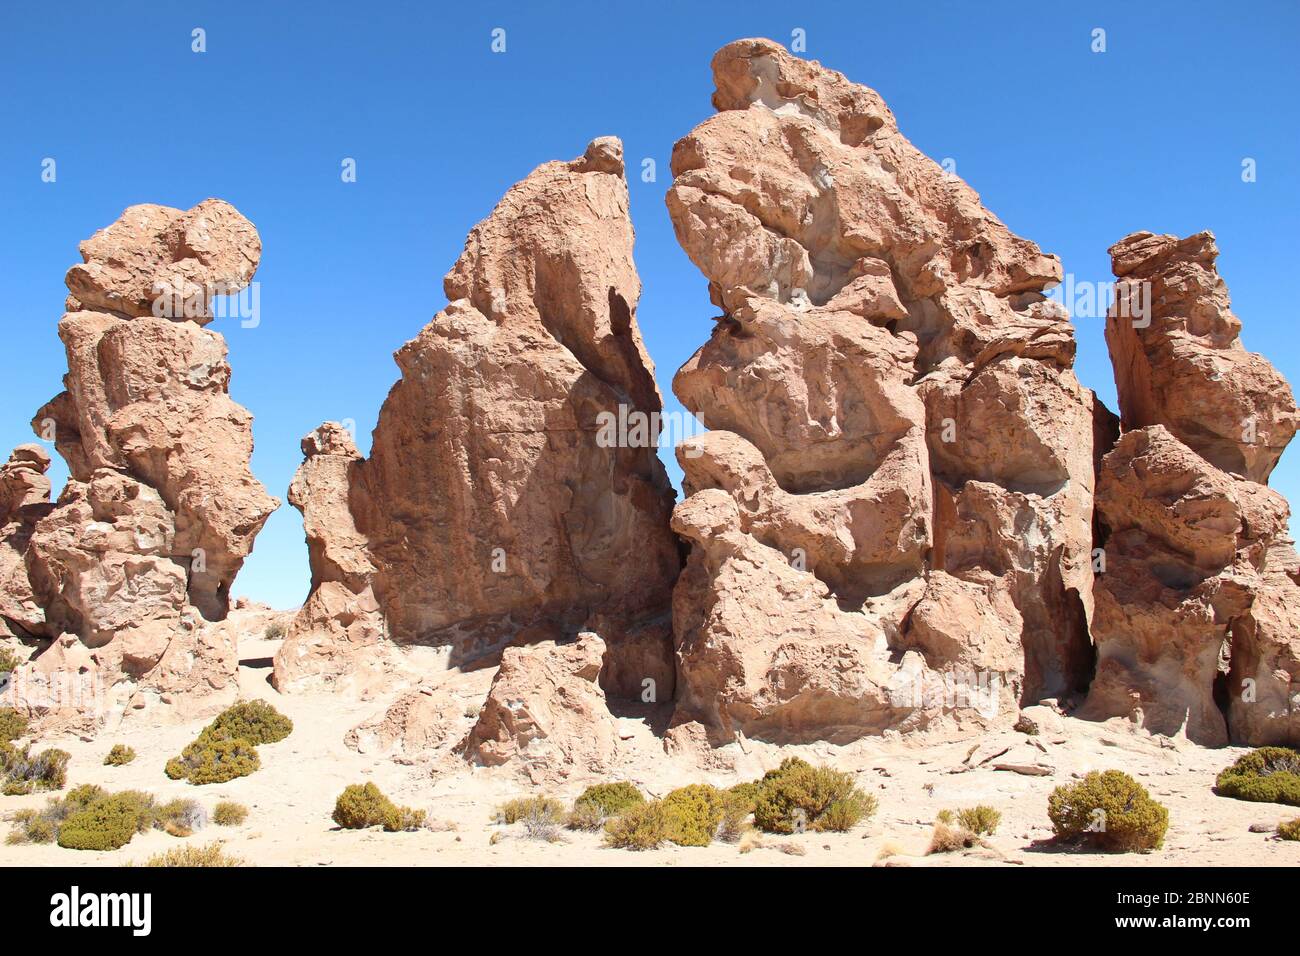 Interessante Felsformationen durch die Winderosion des Landes auf dem bolivianischen Altiplano im Südwesten Boliviens Stockfoto